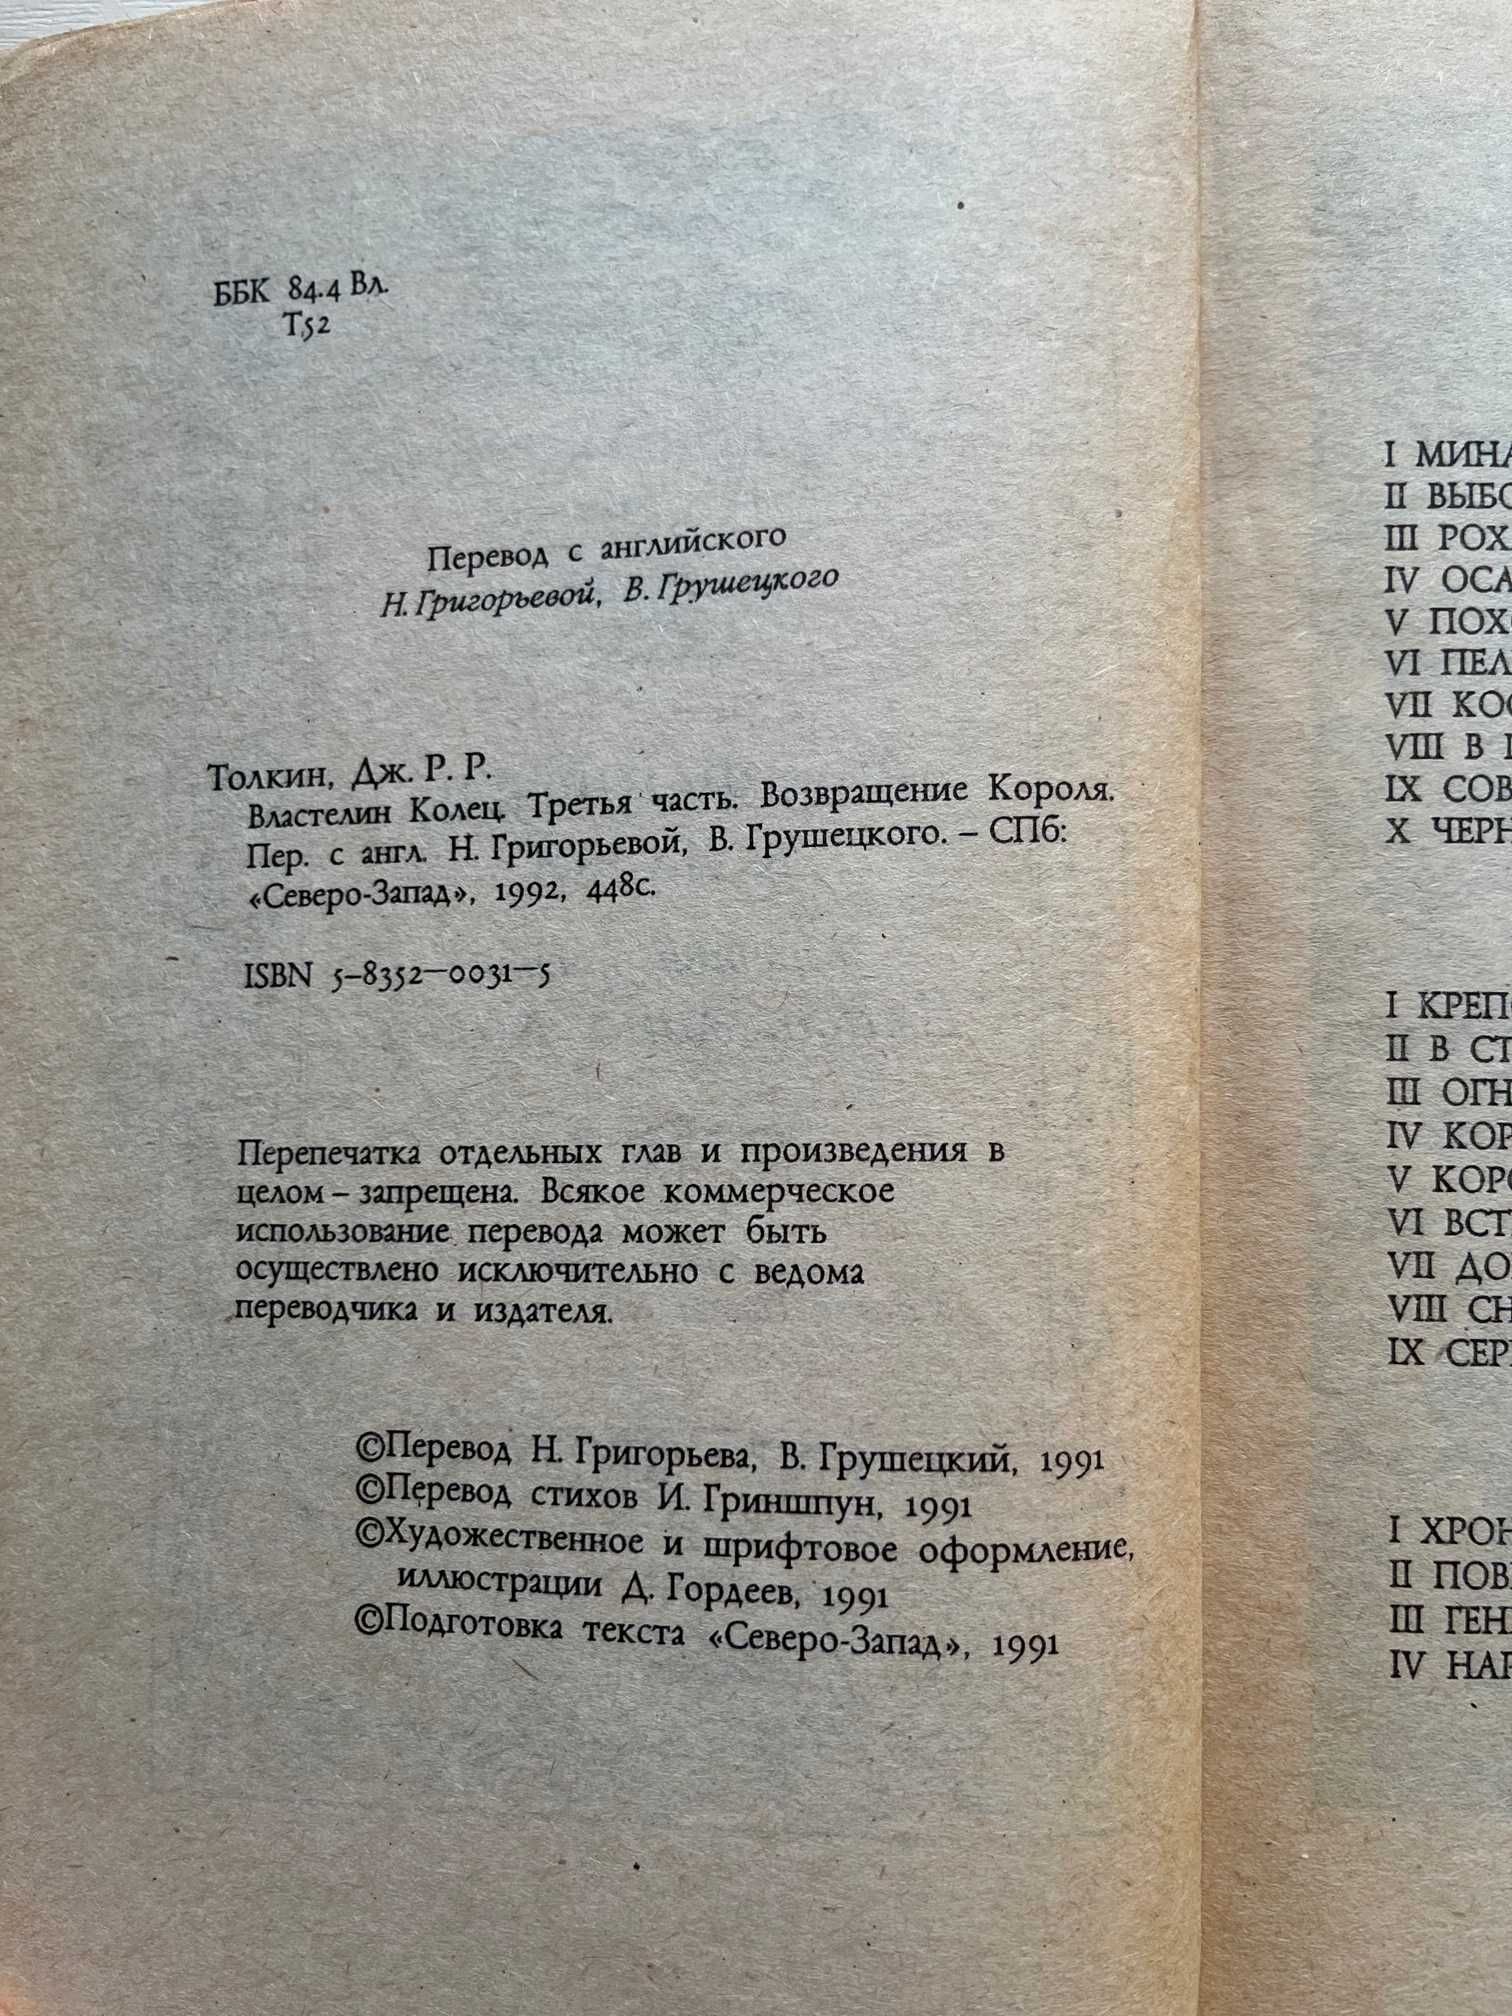 "Властелин колец", перевод Григорьева Н., Грушецкий В., серия книг